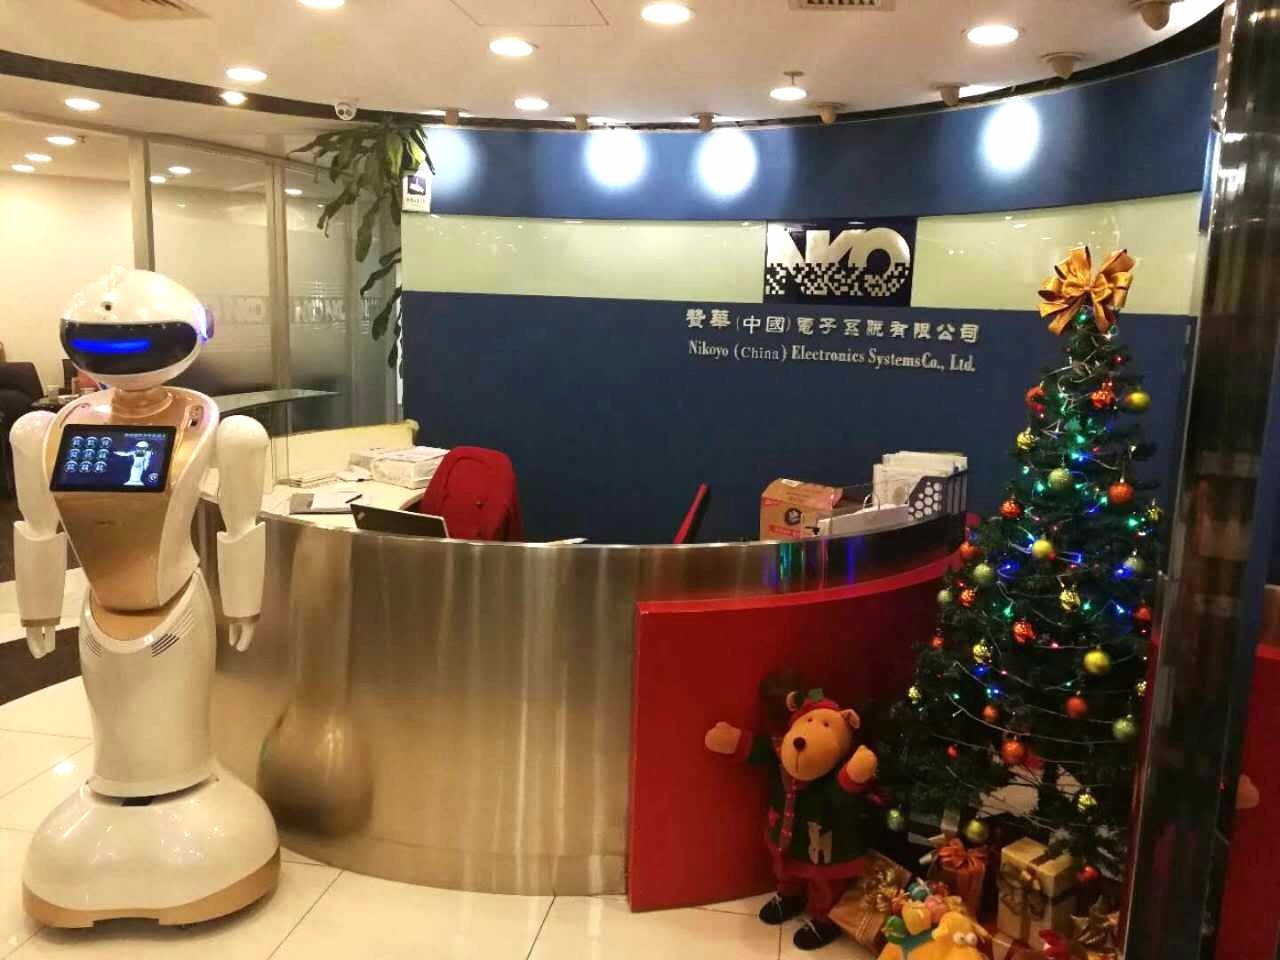 杭州云哲智能安保巡逻机器人厂家性能可靠-智能